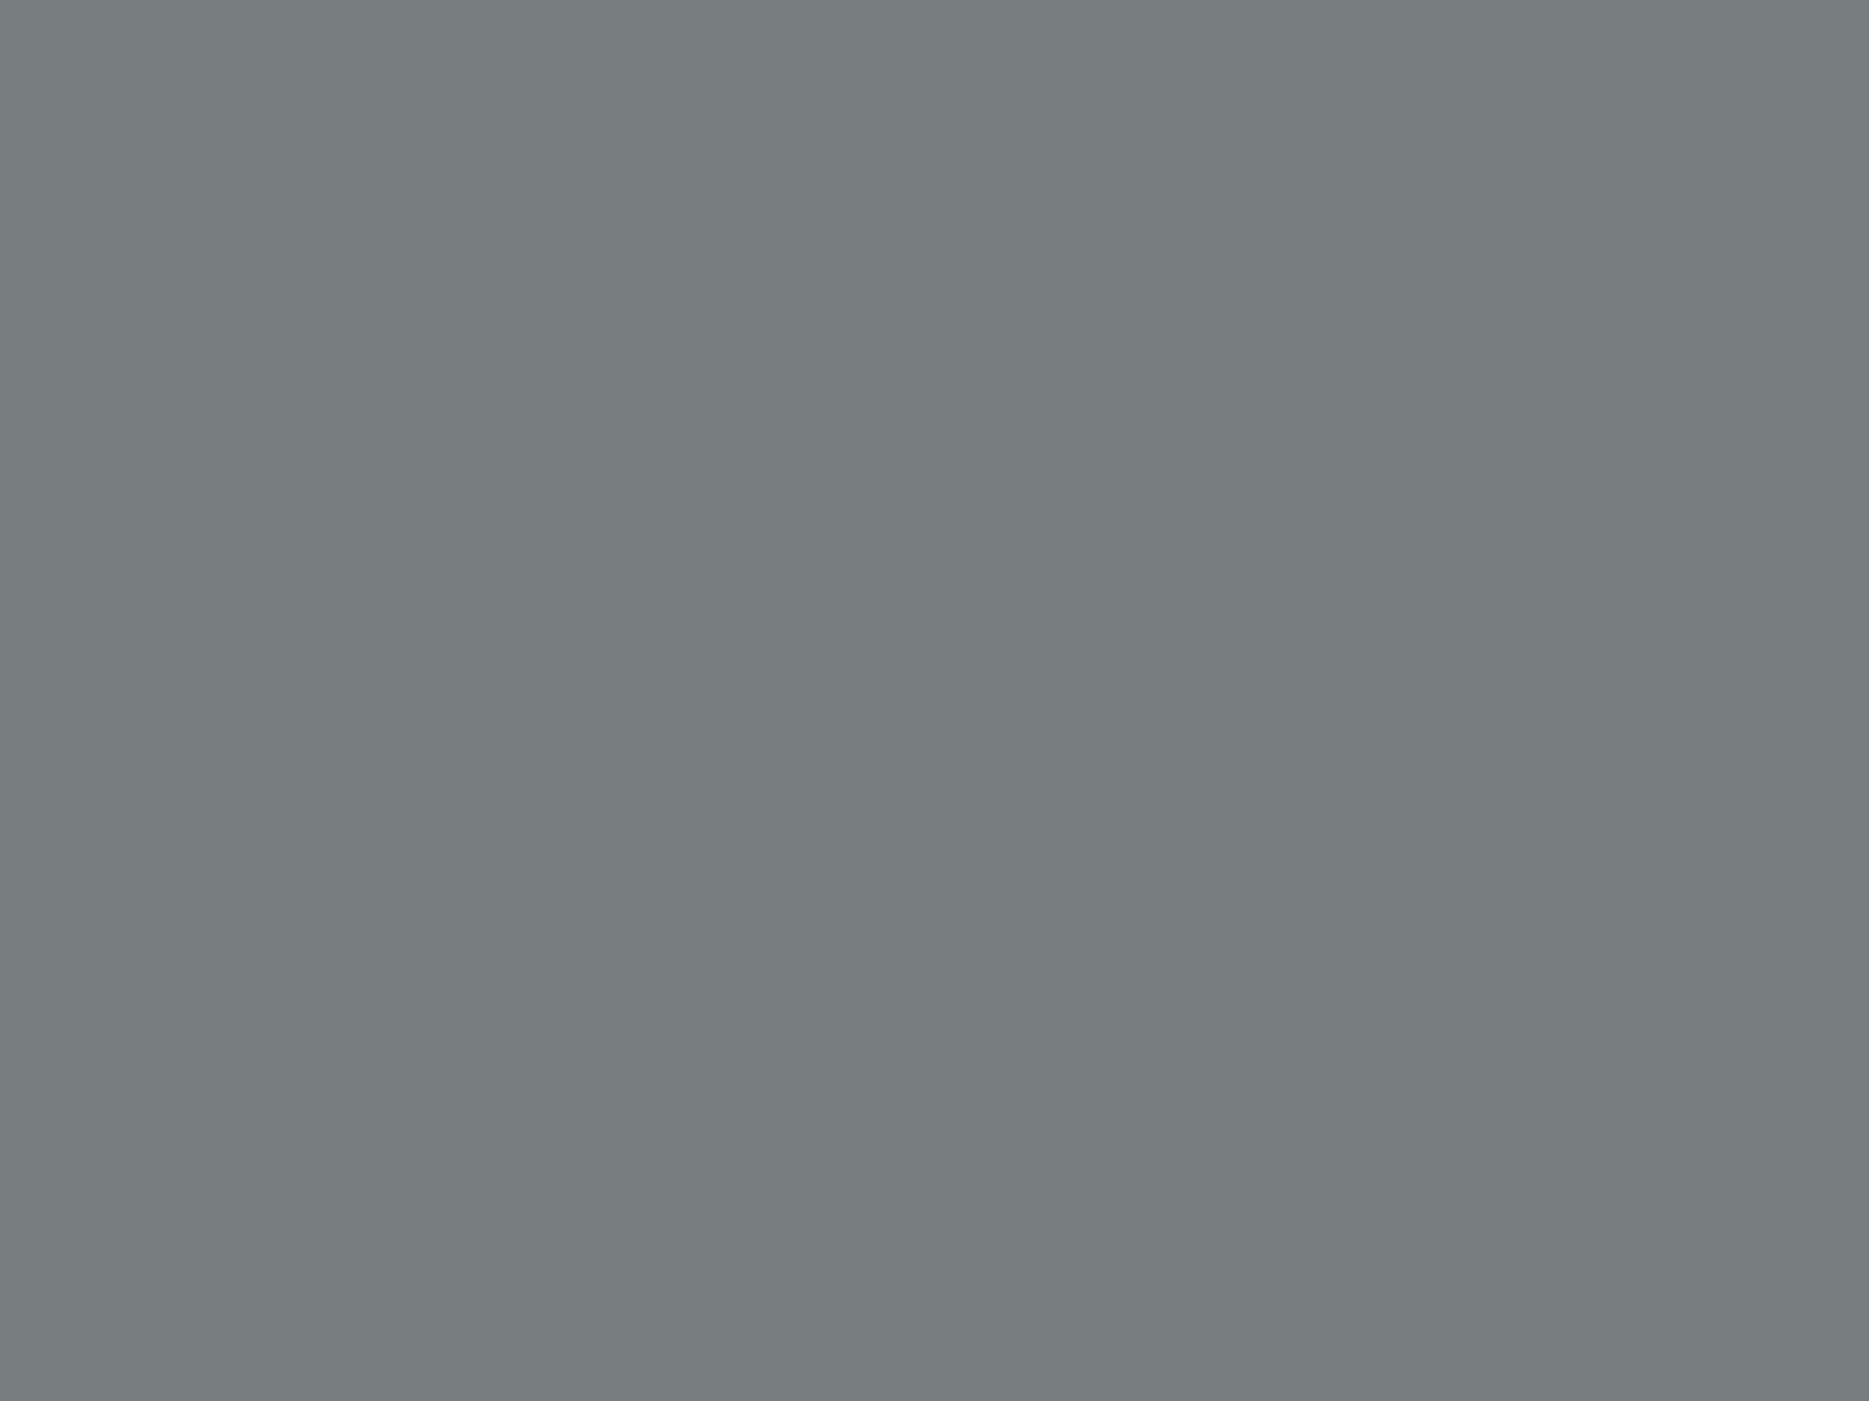 Архип Куинджи. Море. 1870-е годы. Чувашский государственный художественный музей, Чебоксары